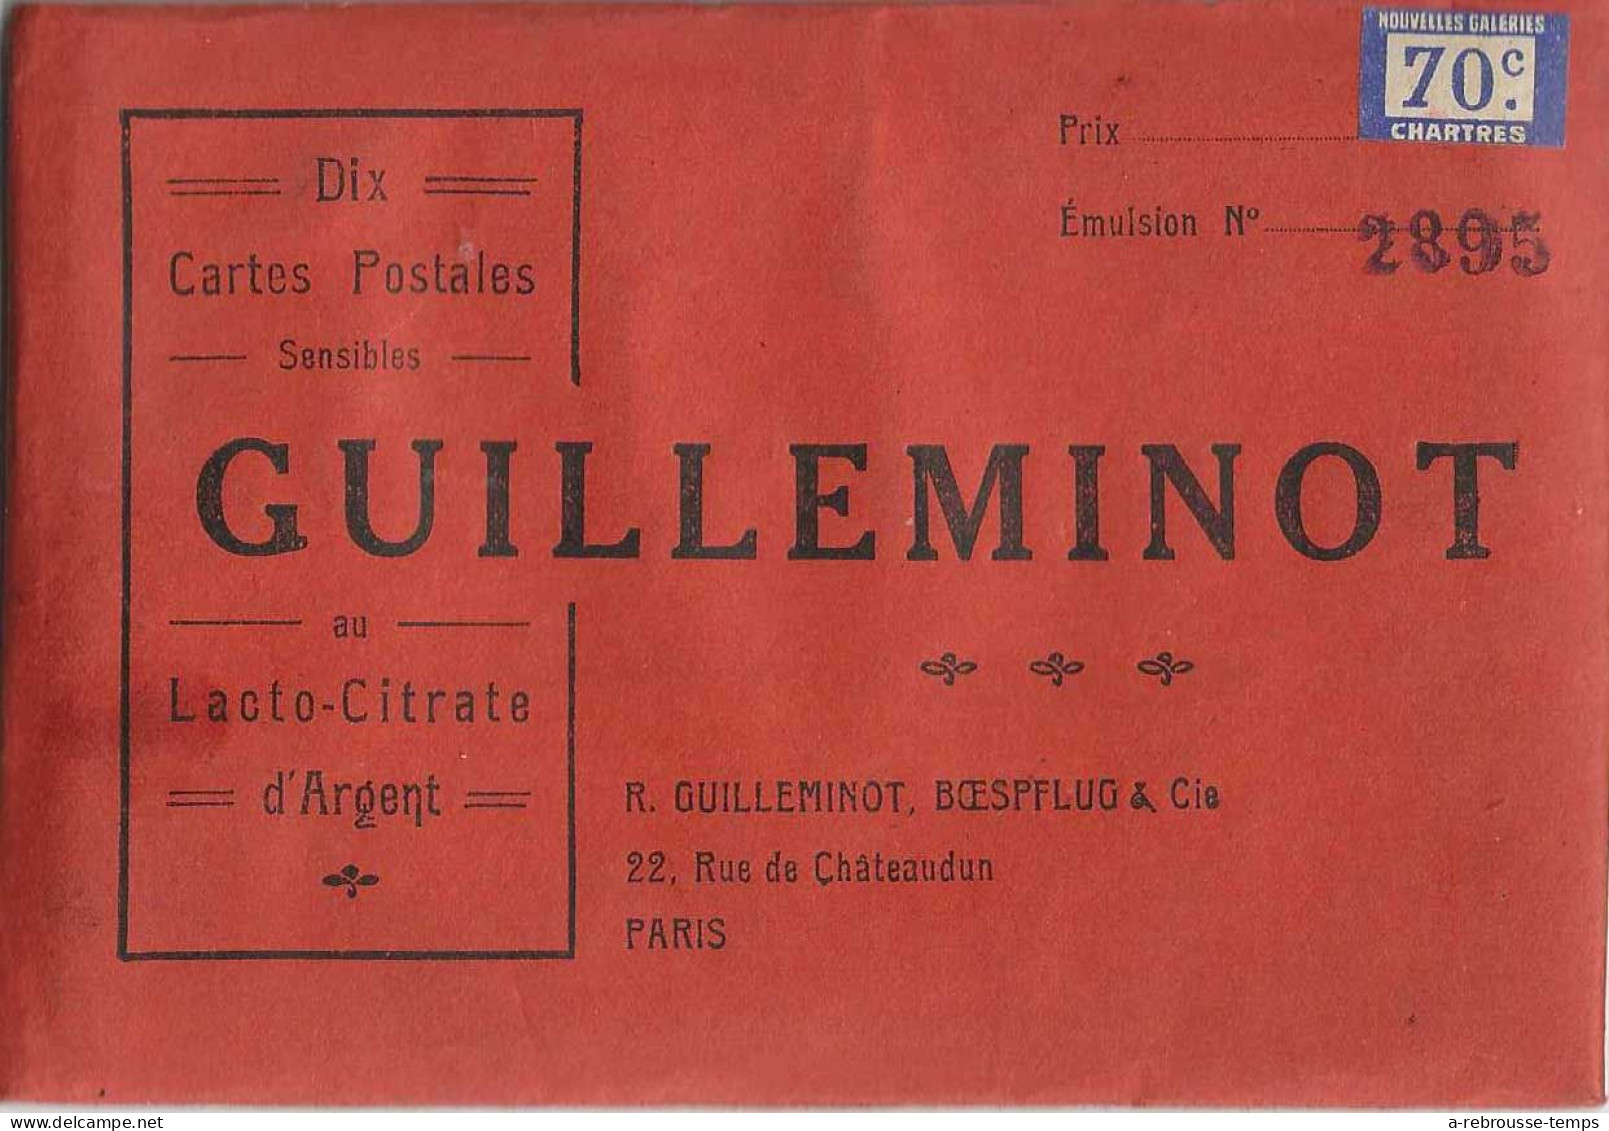 PAS OUVERT- 10 Feuilles Pour Cartes Postales Au Lacto Citrate D'argent Guilleminot-vendu Par Nouvelles Galeries-Chartres - Materiale & Accessori